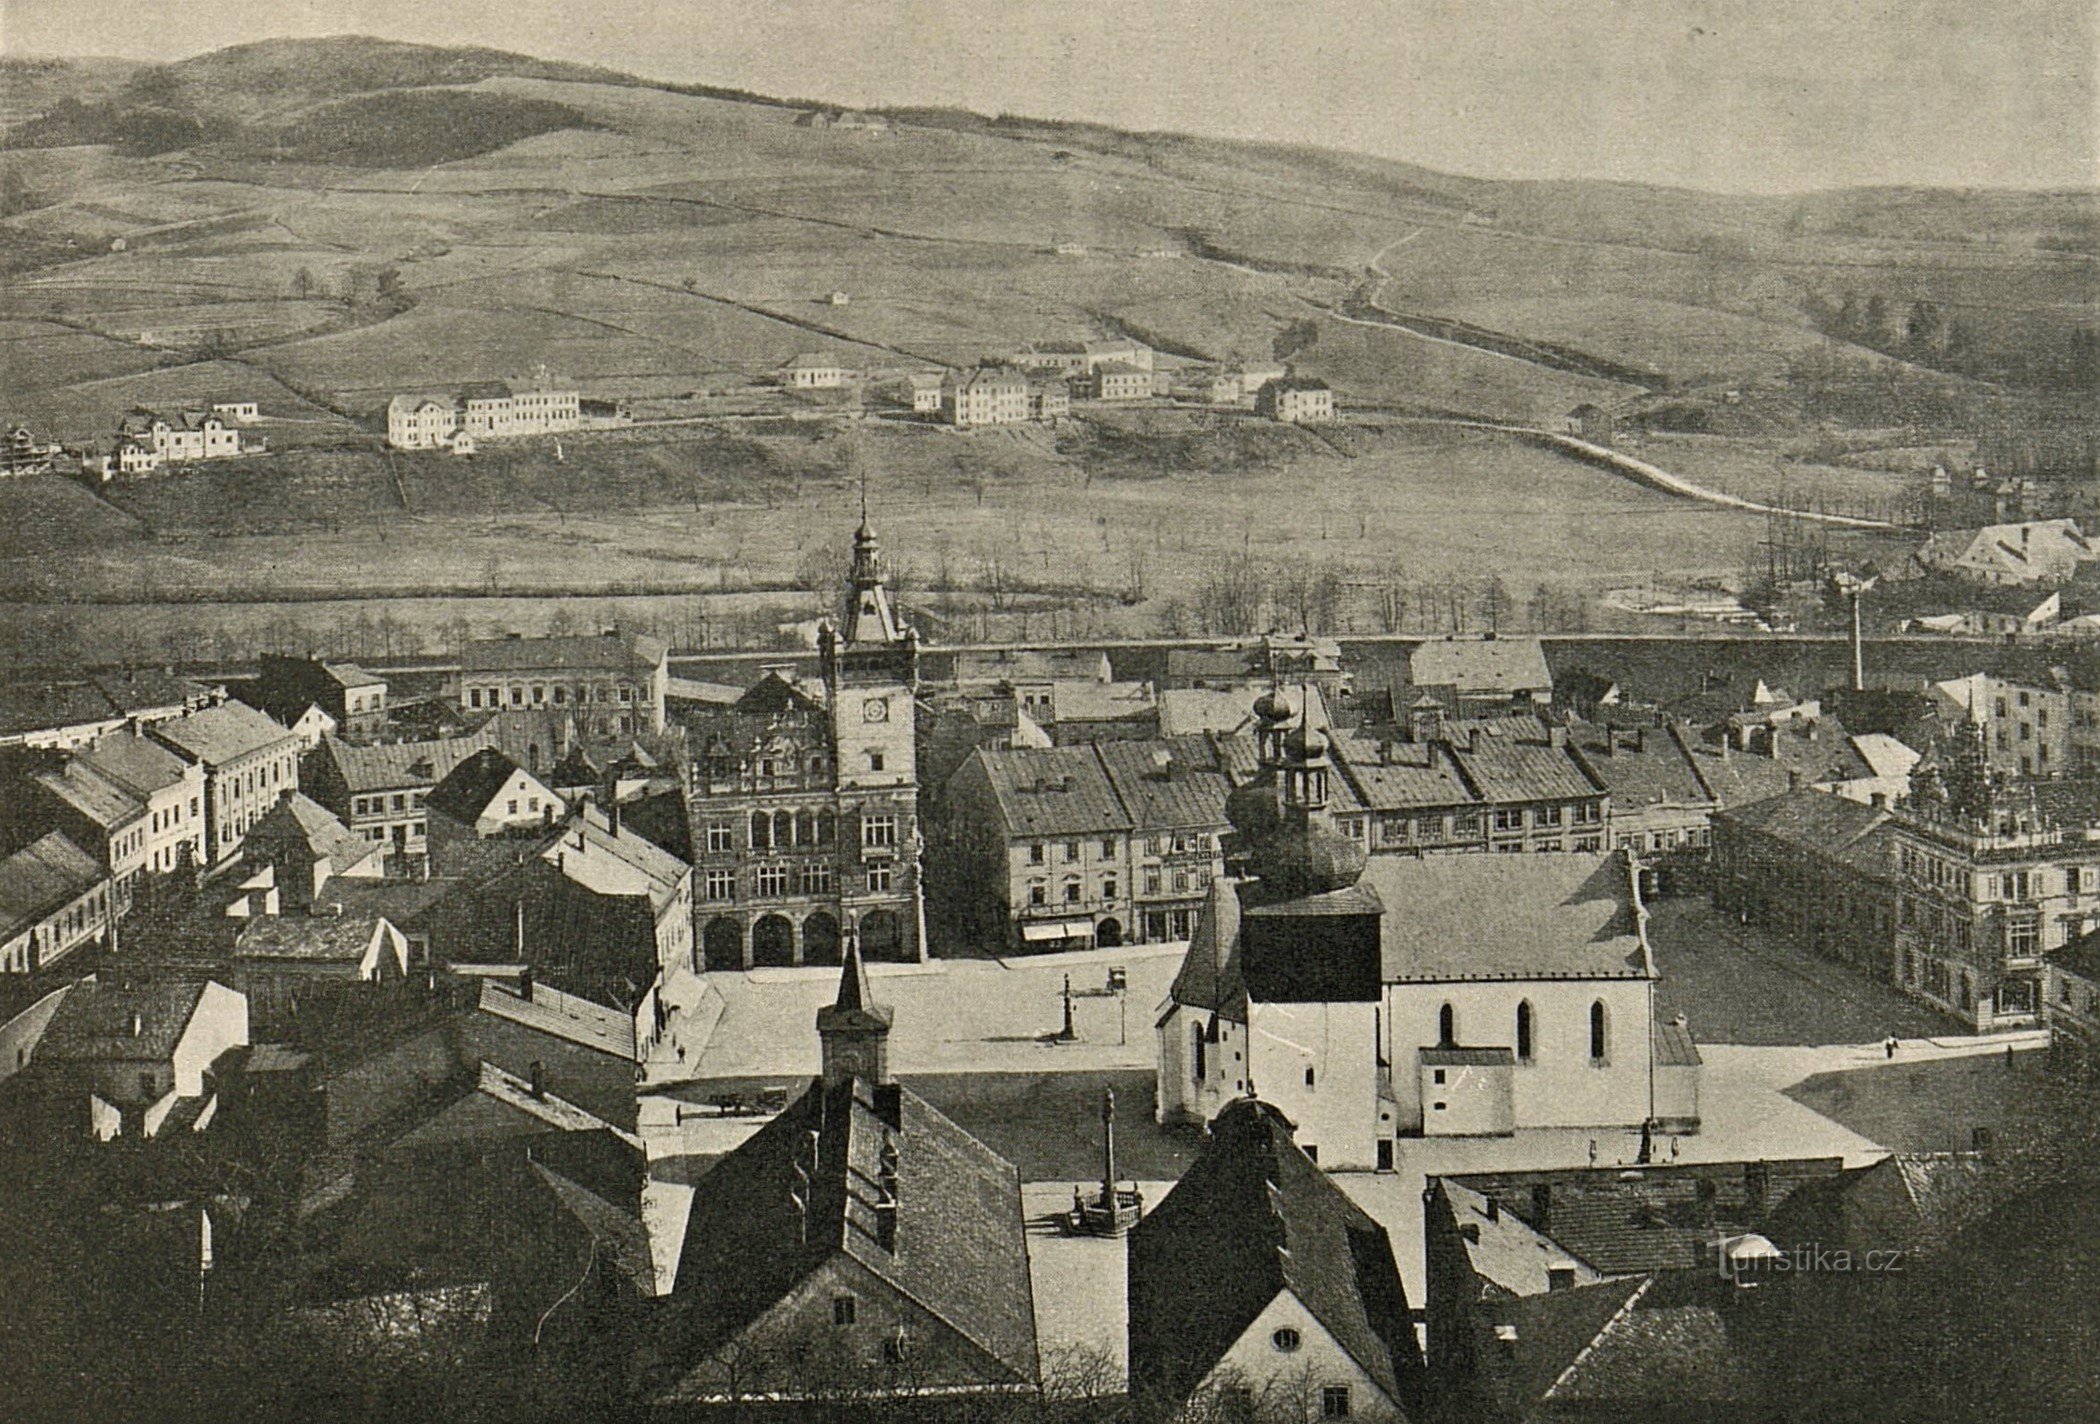 Ansicht von Náchod von der Burg aus Anfang des 20. Jahrhunderts (wahrscheinlich zwischen 1902-1904)